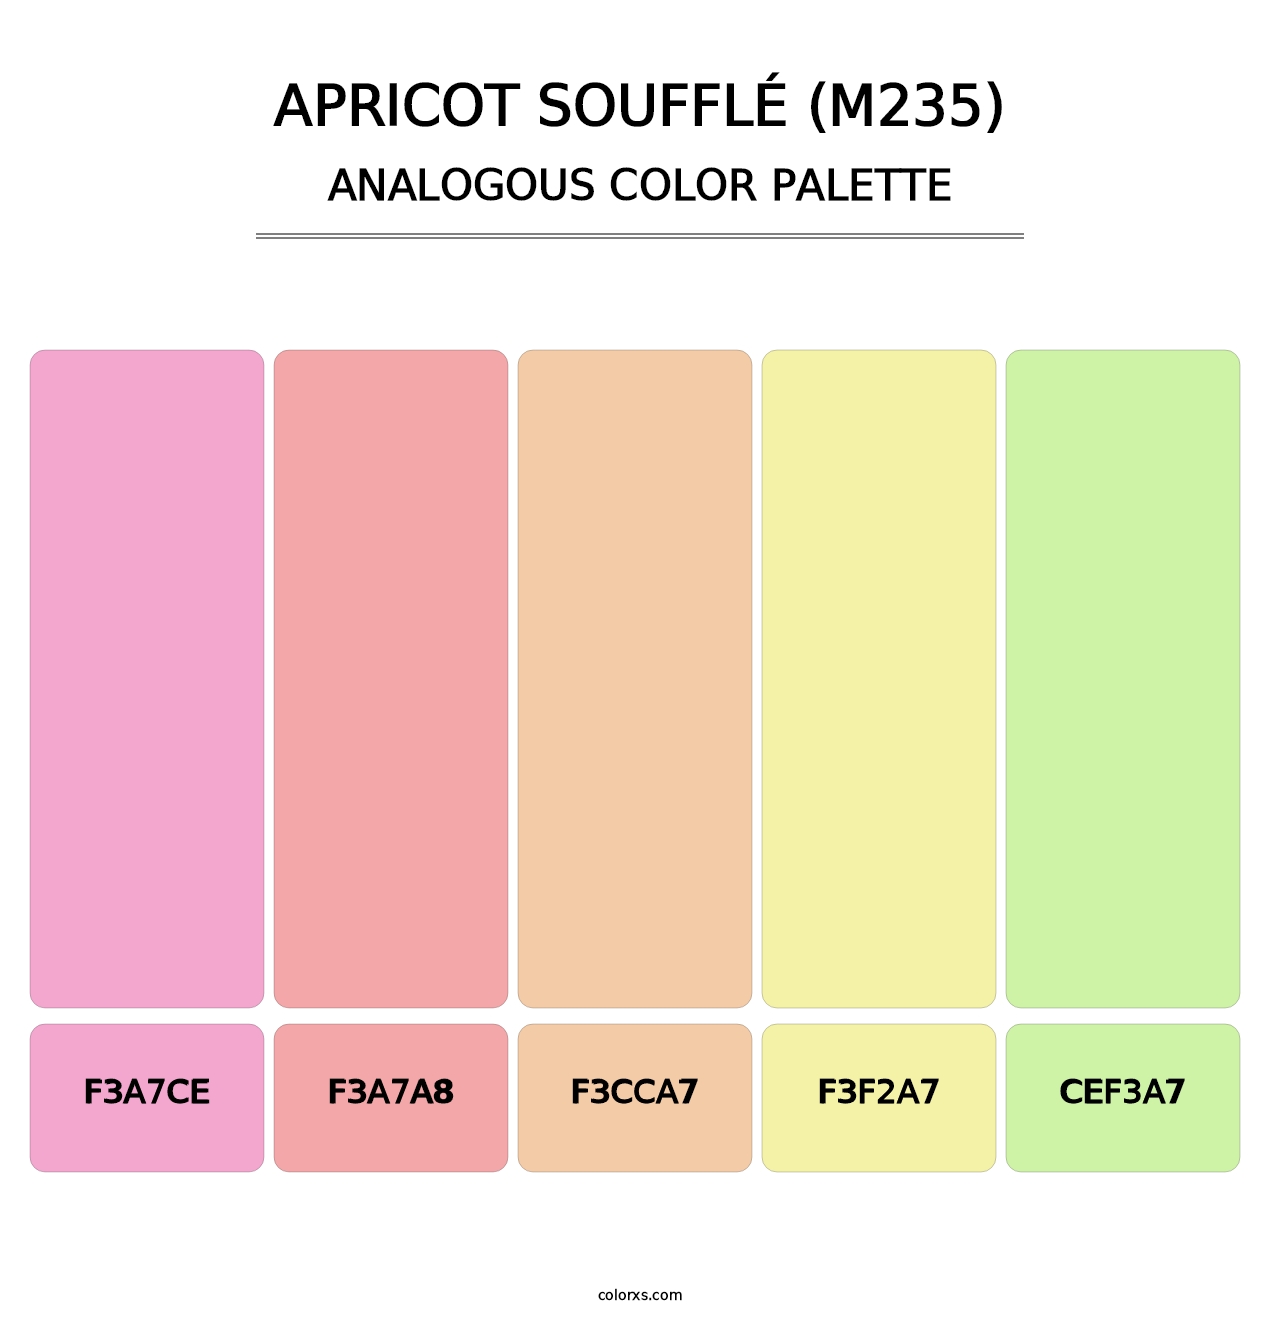 Apricot Soufflé (M235) - Analogous Color Palette